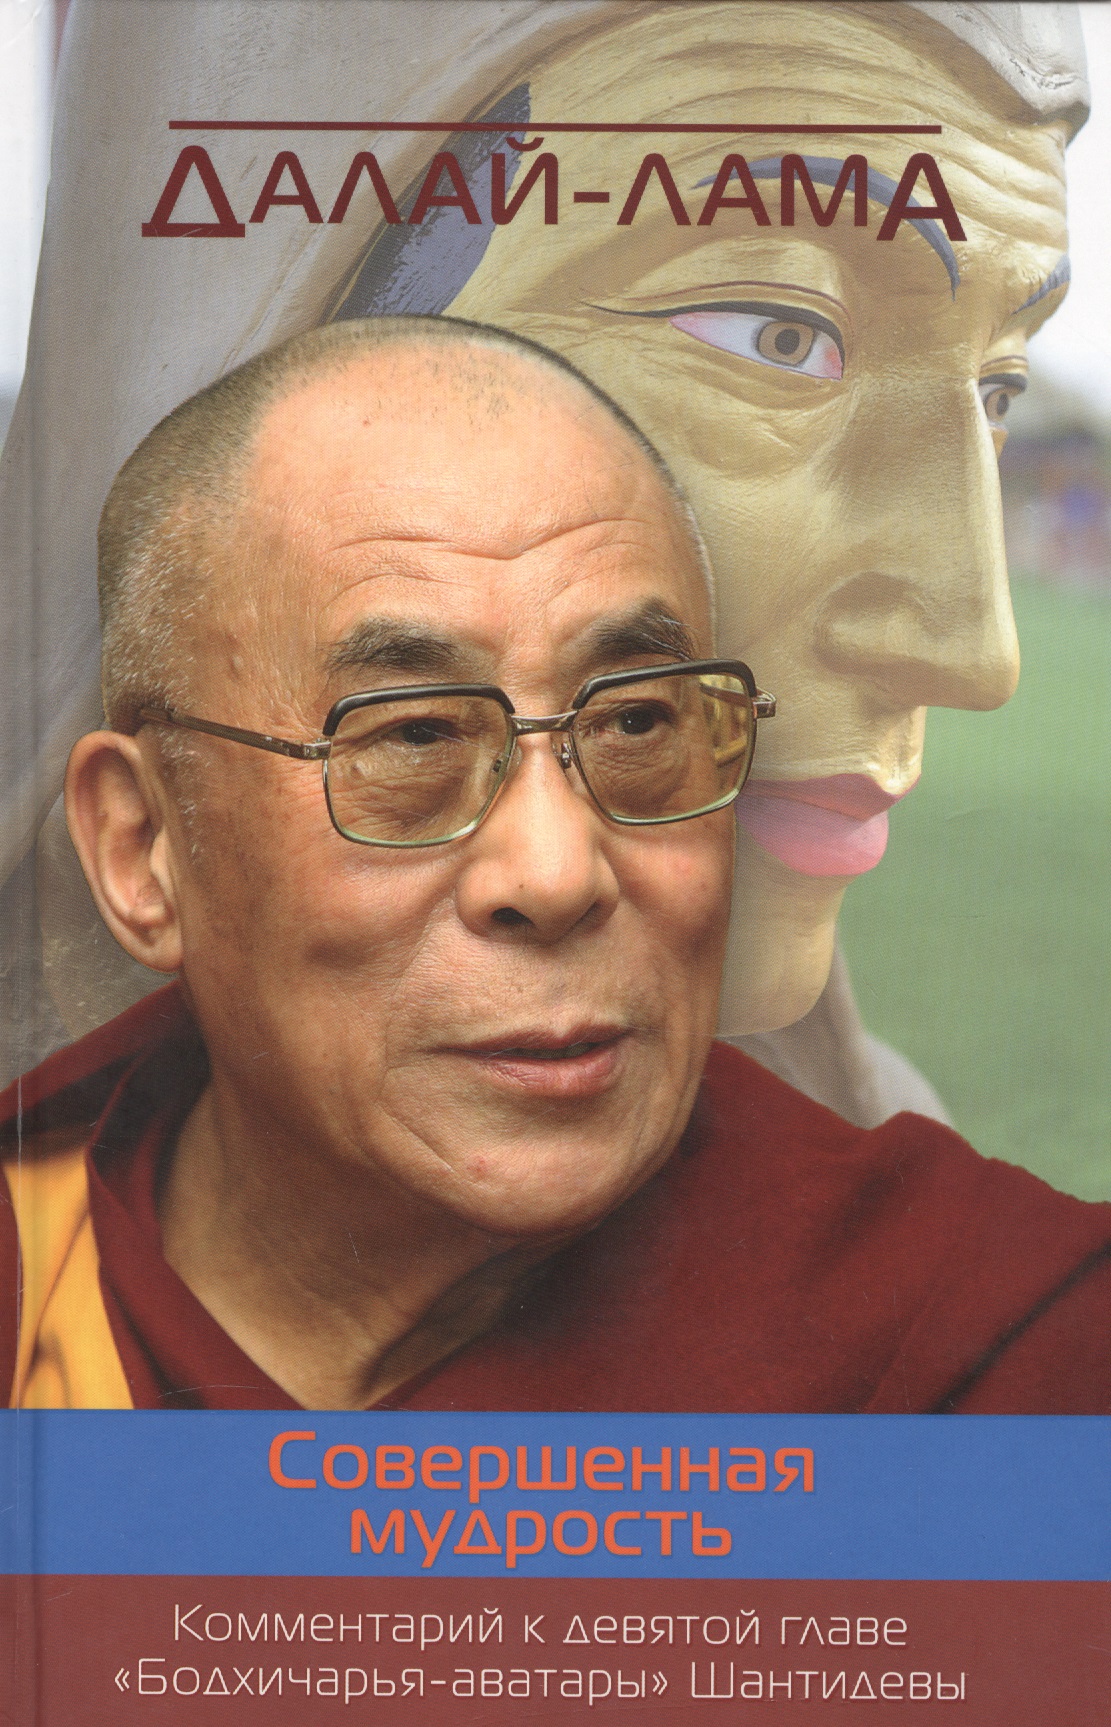 цена Жиронкина Ю., Далай-лама XIV Совершенная мудрость. Комментарий к девятой главе «Бодхичарья-аватары» Шантидевы